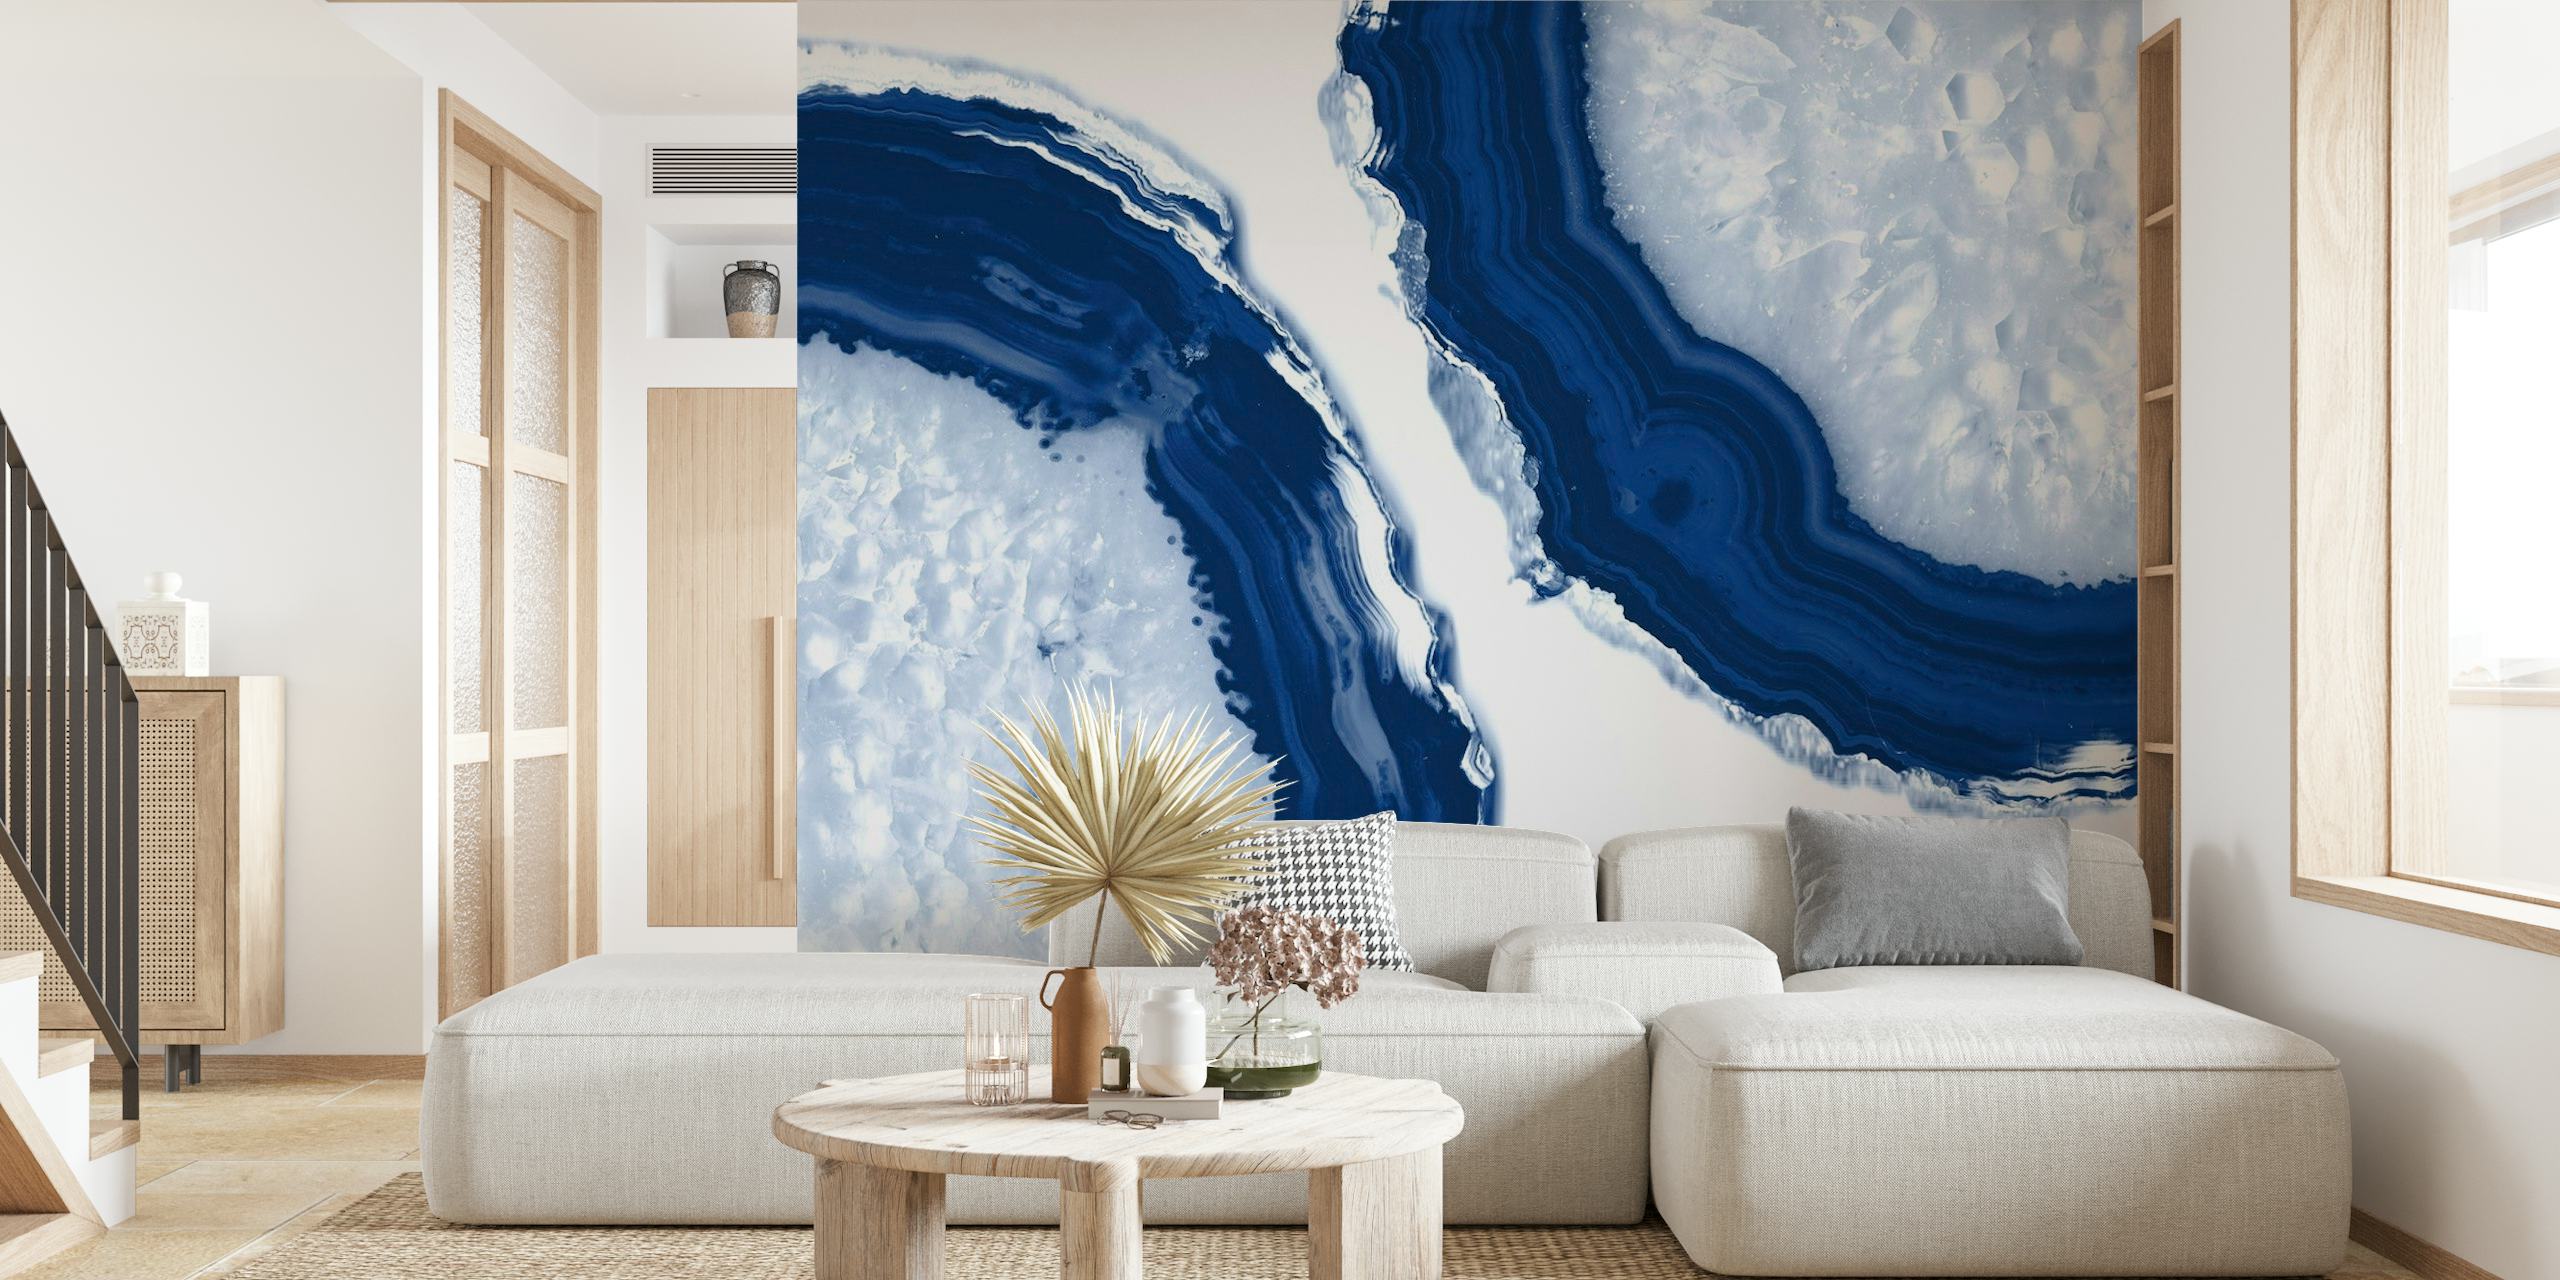 Sinivalkoinen akaattikuvioinen seinämaalaus